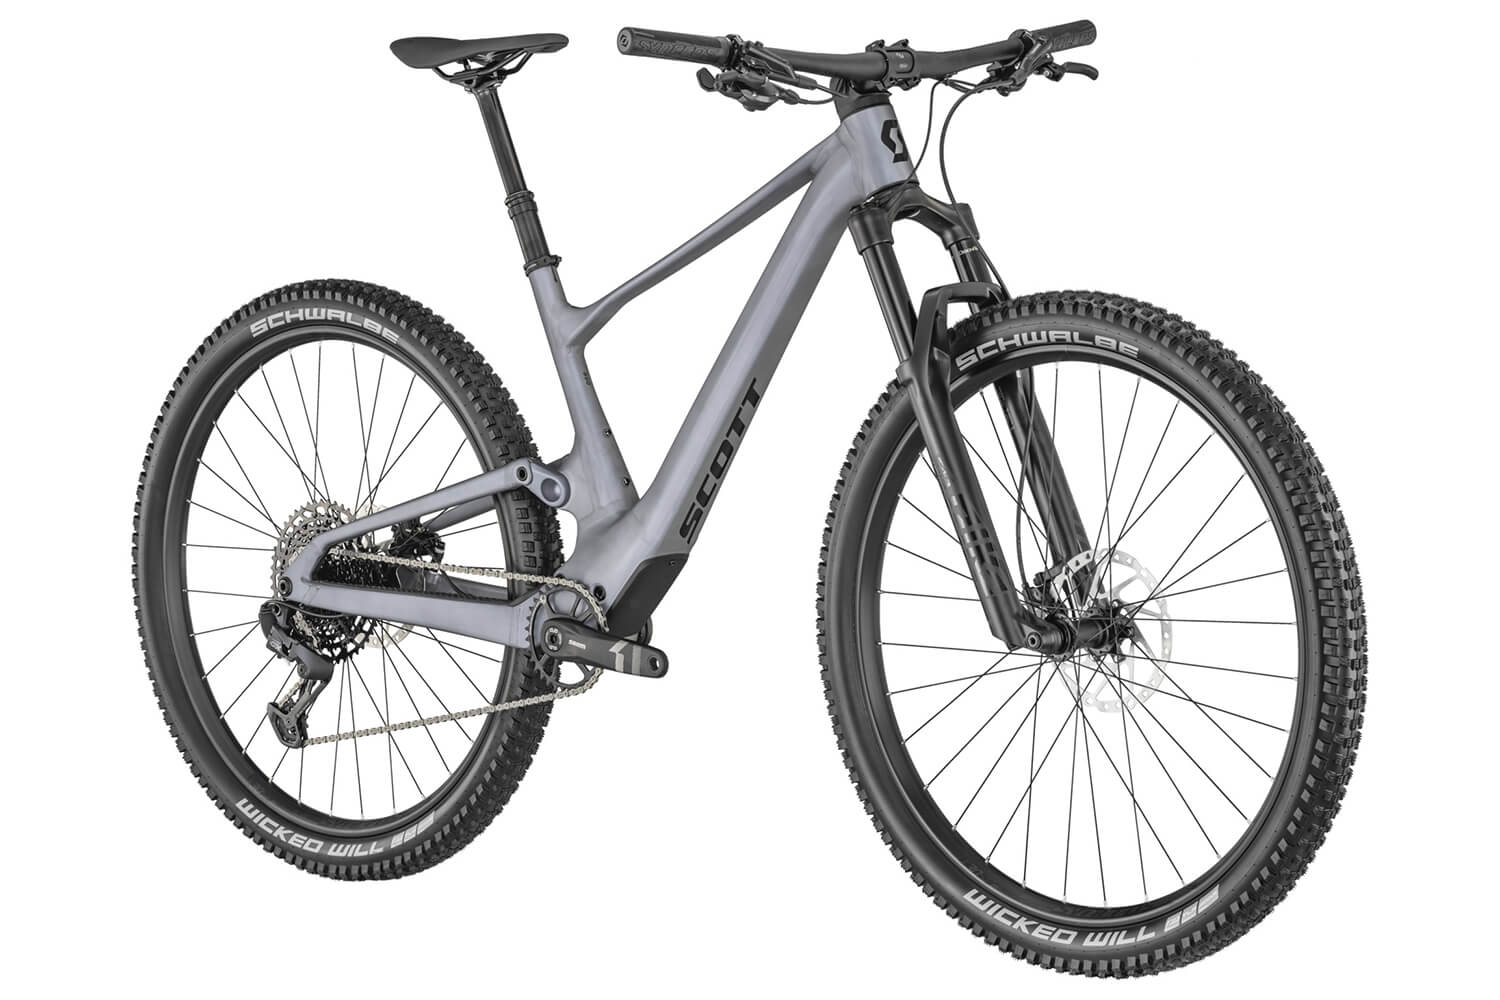  Отзывы о Двухподвесном велосипеде Scott Spark 950 2022